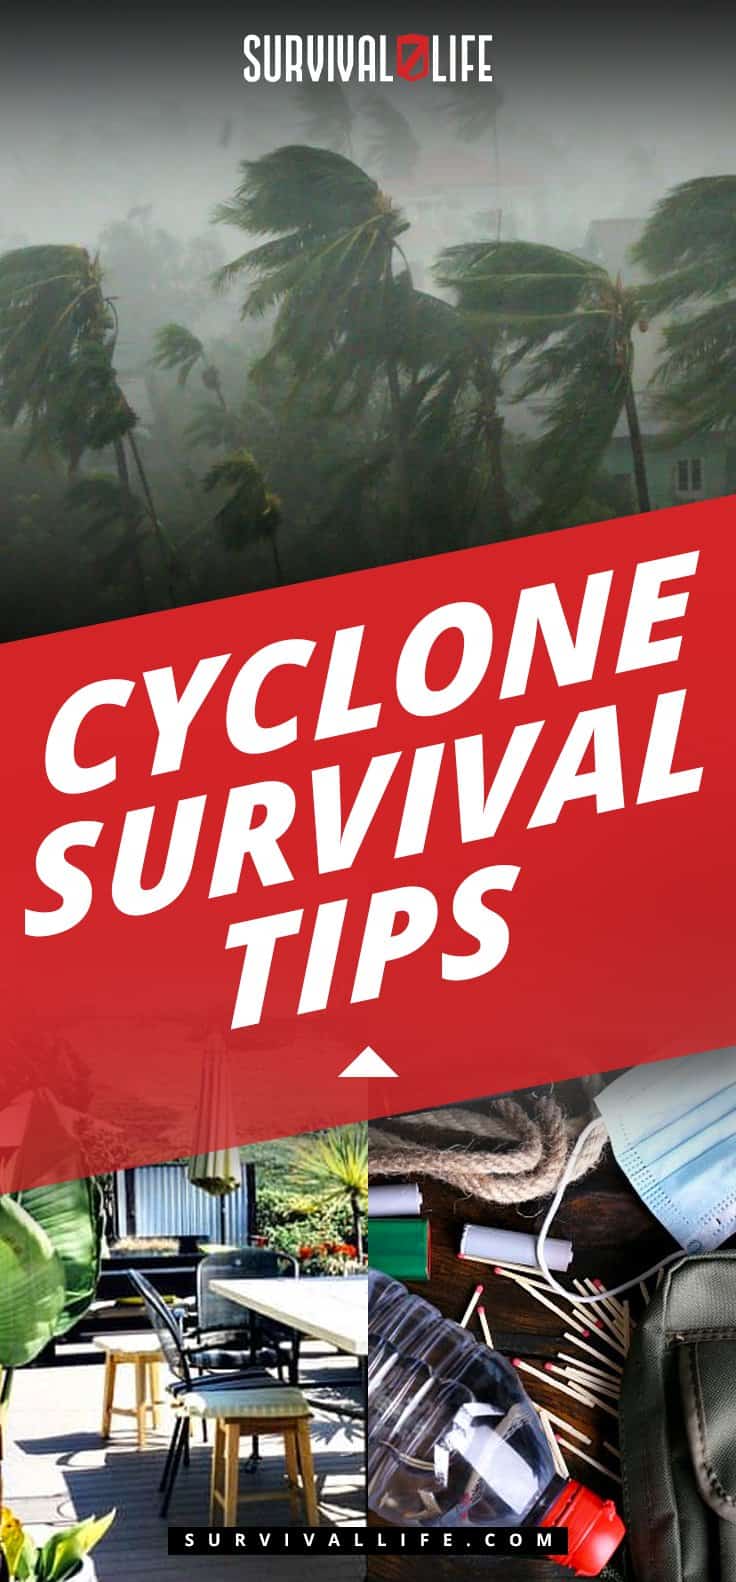 Cyclone Survival Tips | Survival Life